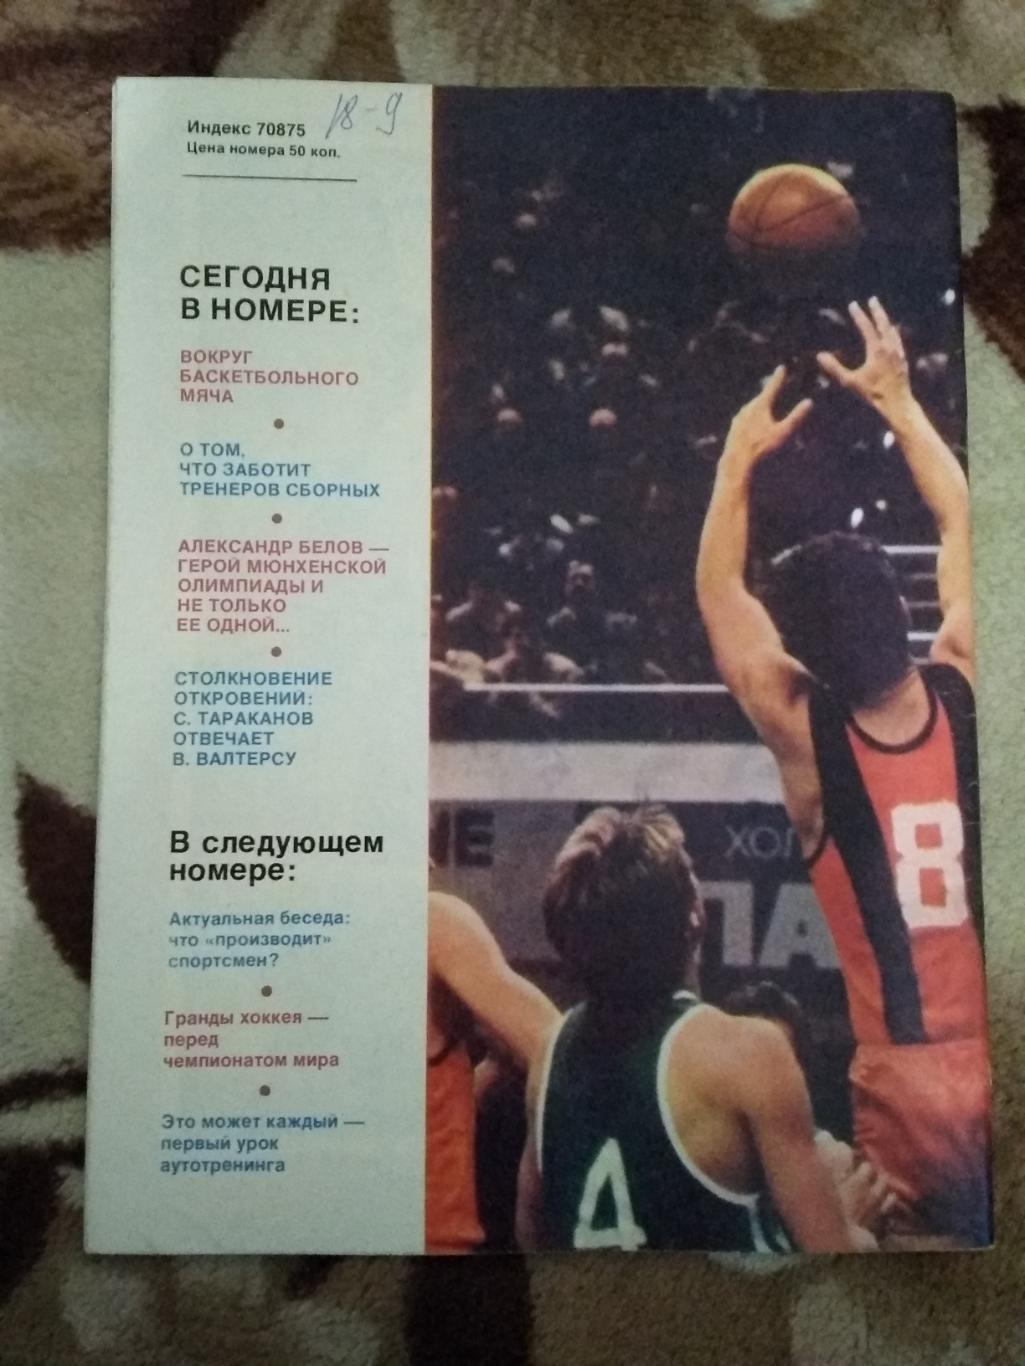 Журнал.Спортивные игры № 3 1987 г. 1